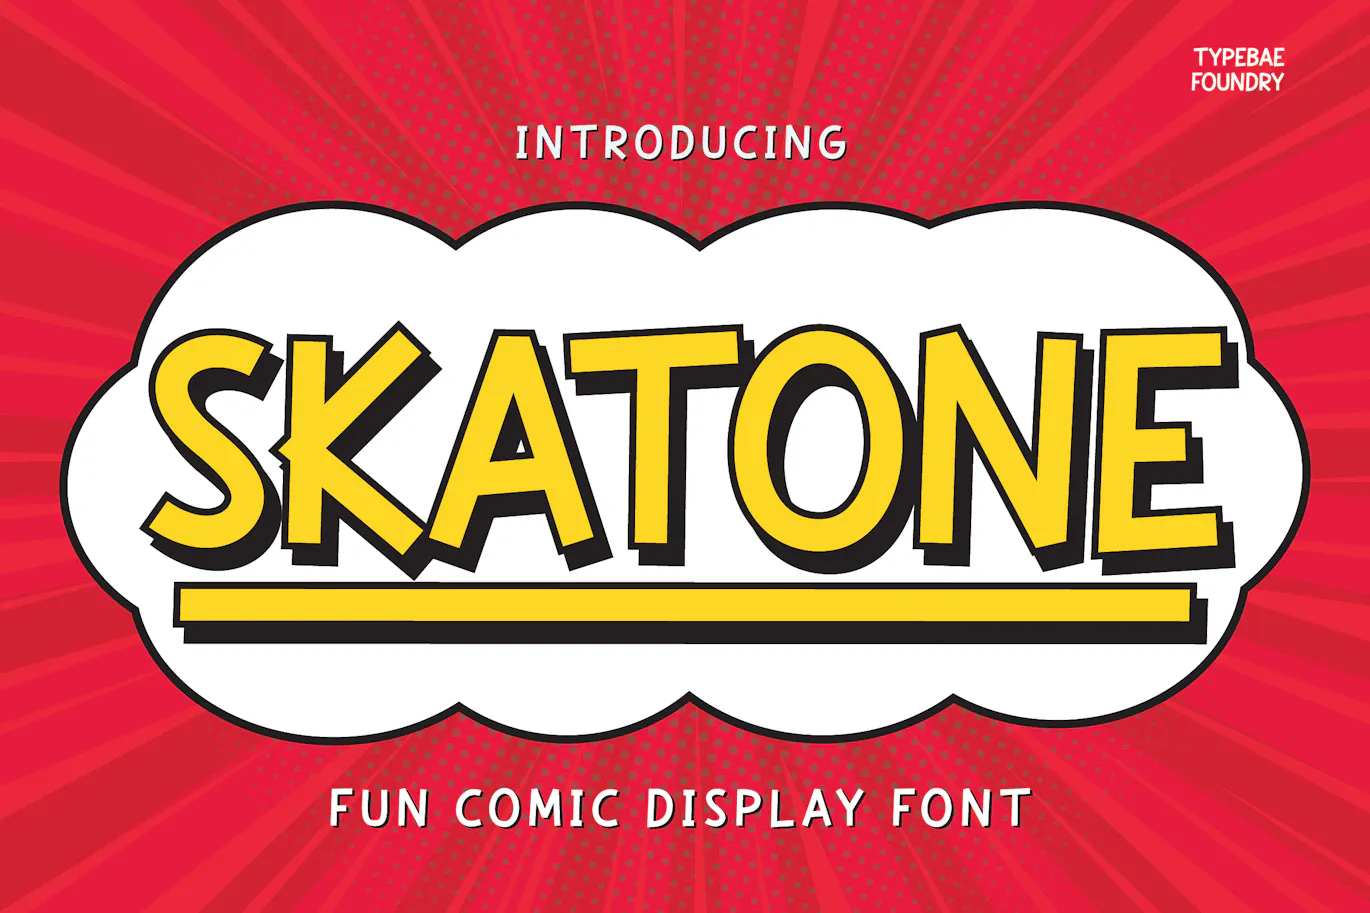 有趣而活泼的漫画显示字体- Skatone - Fun Comic Display Font 设计字体 第1张